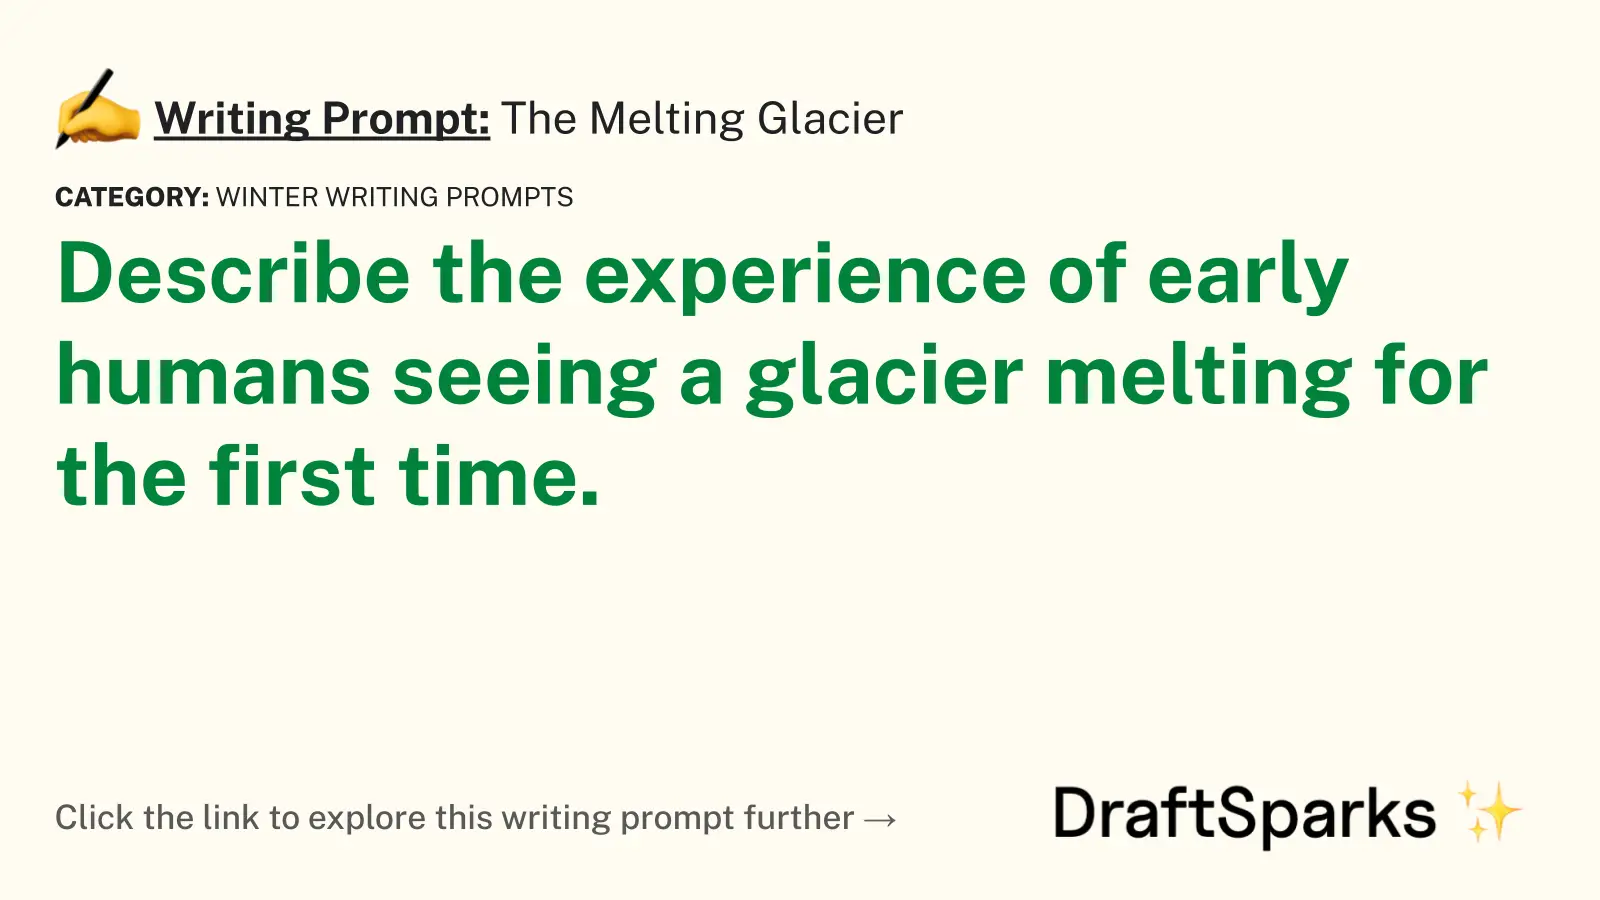 The Melting Glacier